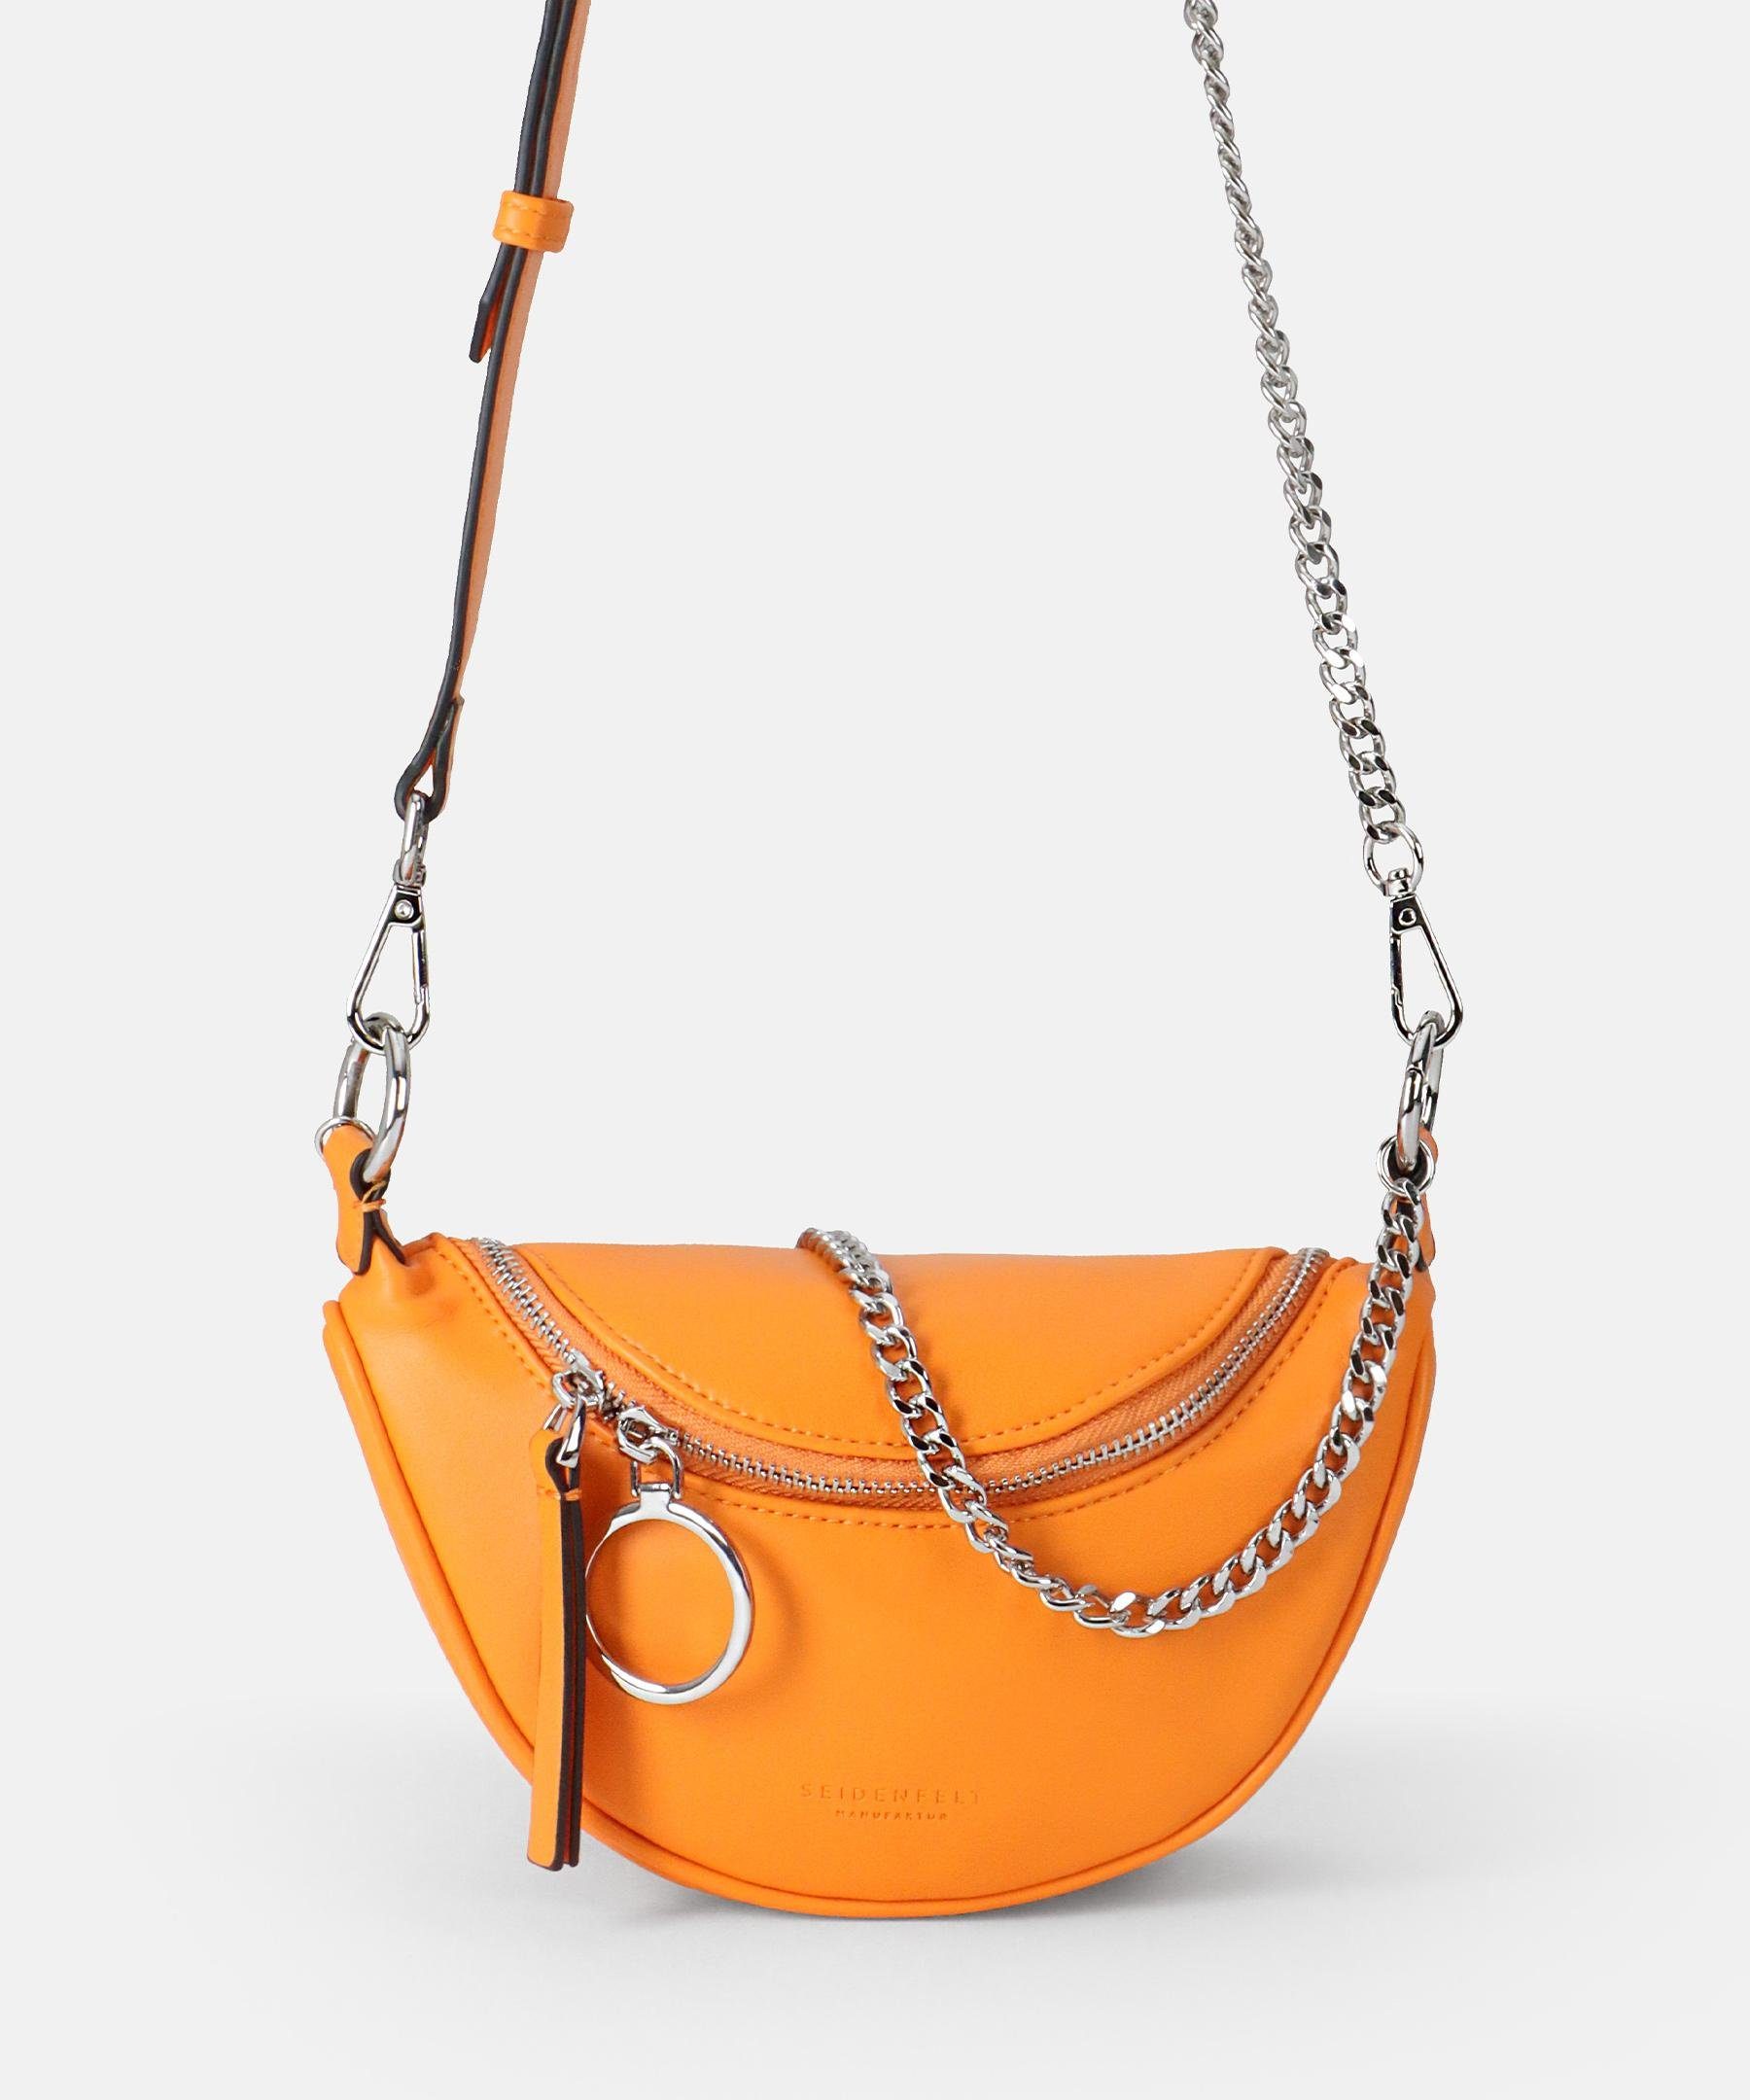 Kaufen Sie die neuesten Artikel im Ausland Seidenfelt Manufaktur Handtasche orange II' 'Skien